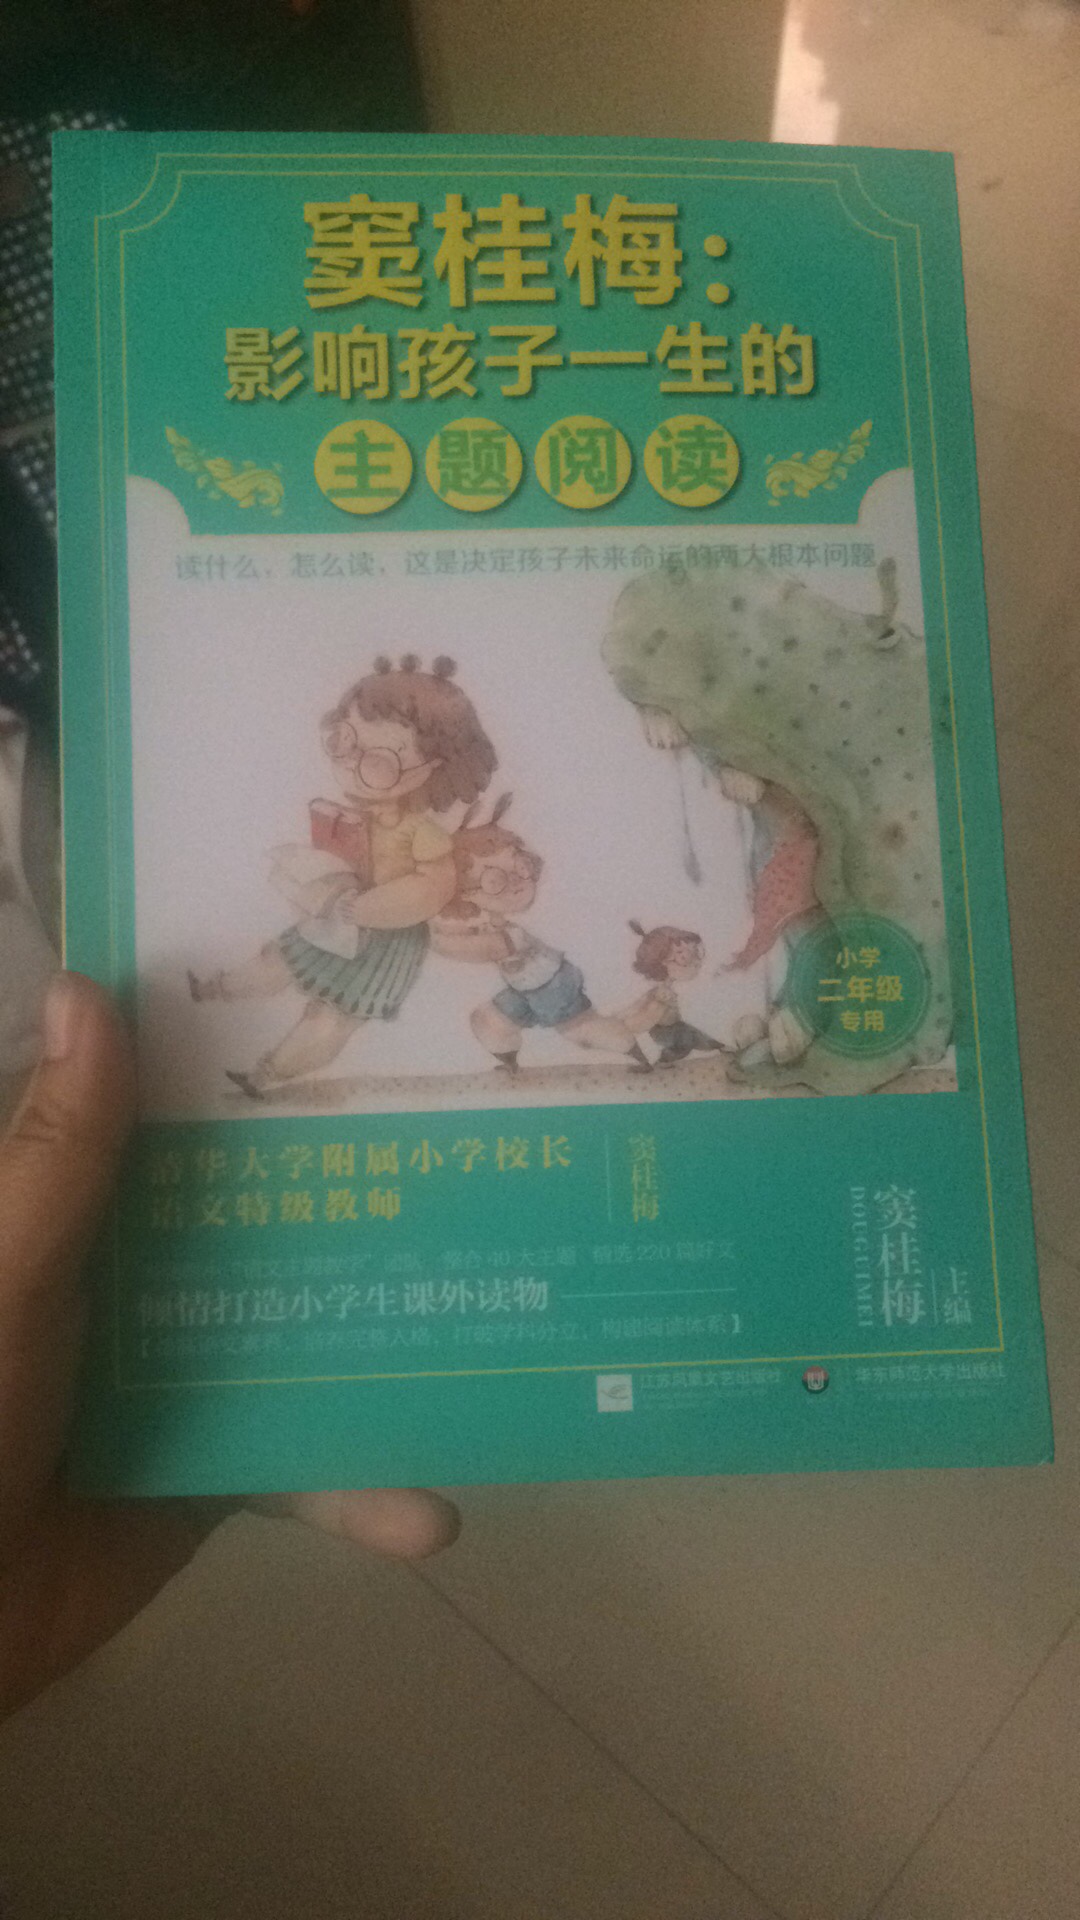 窦老师的这个系列还不错，买给孩子读的，希望孩子养成爱读书的好习惯。